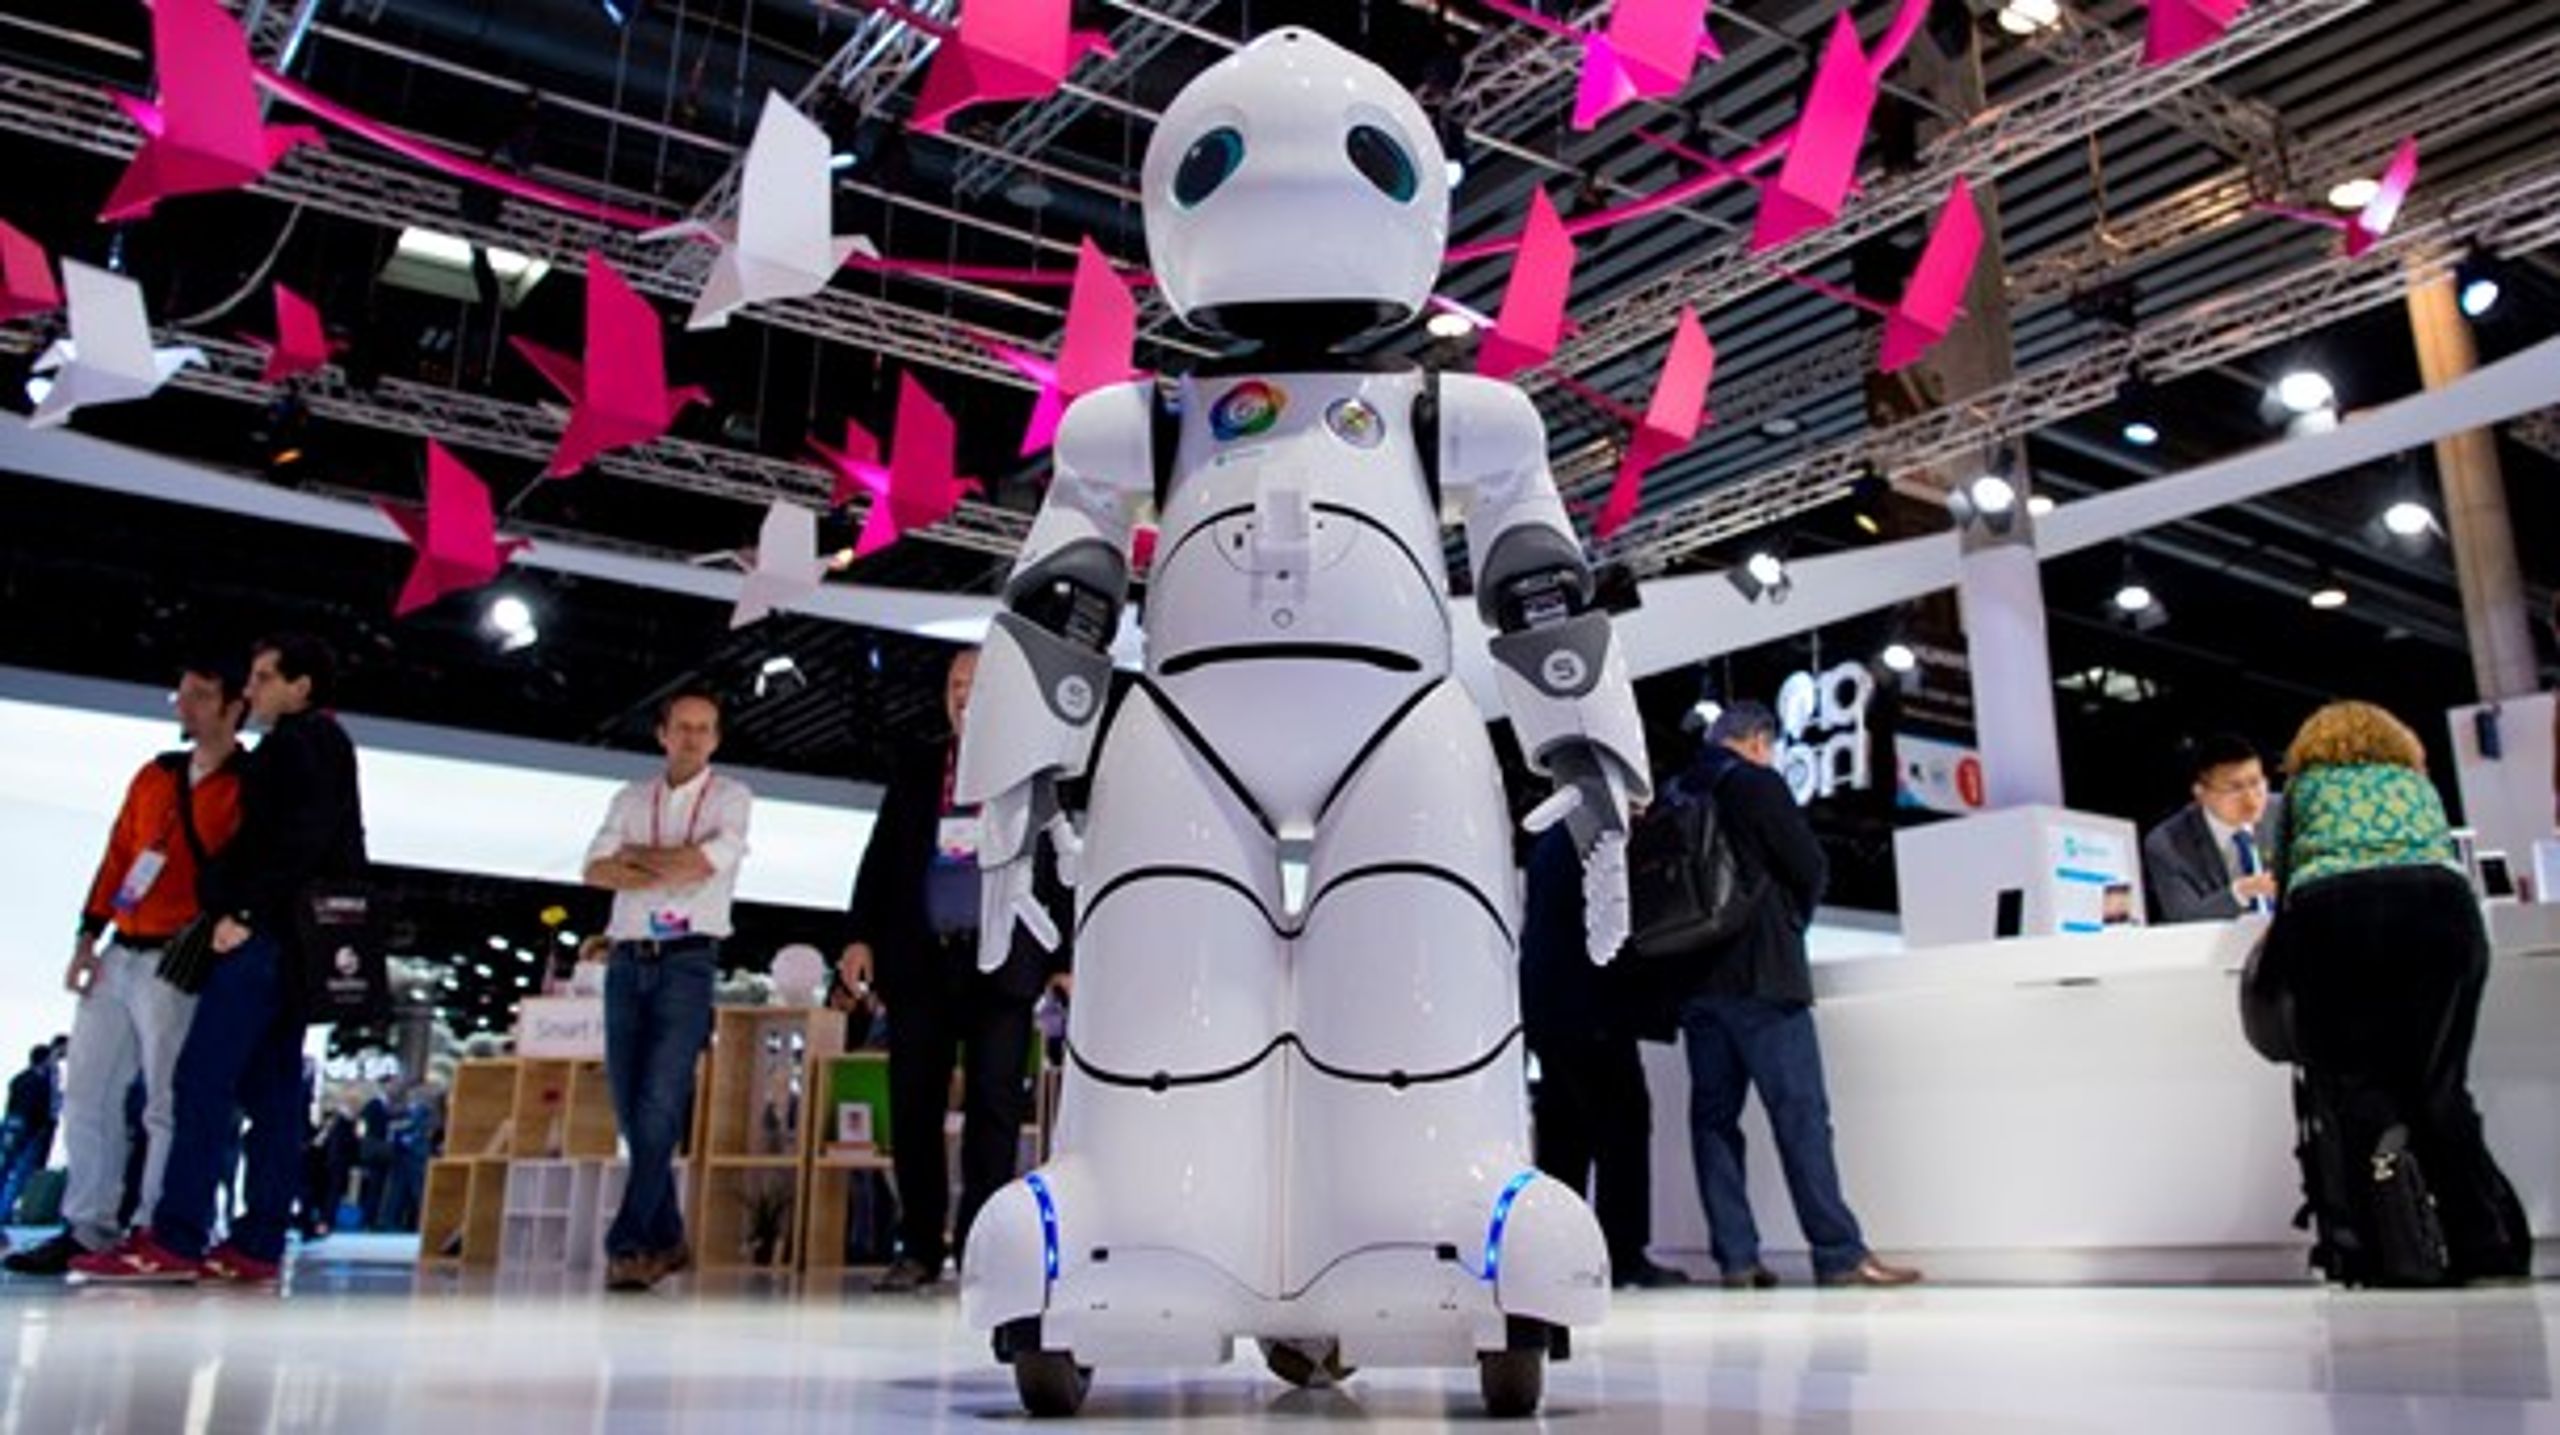 Robotteknologi og kunstig intelligens stiller større kompetencekrav til fremtidens medarbejdere, skriver&nbsp;Jeffrey&nbsp;Saunders, direktør for Instituttet for Fremtidsforskning.